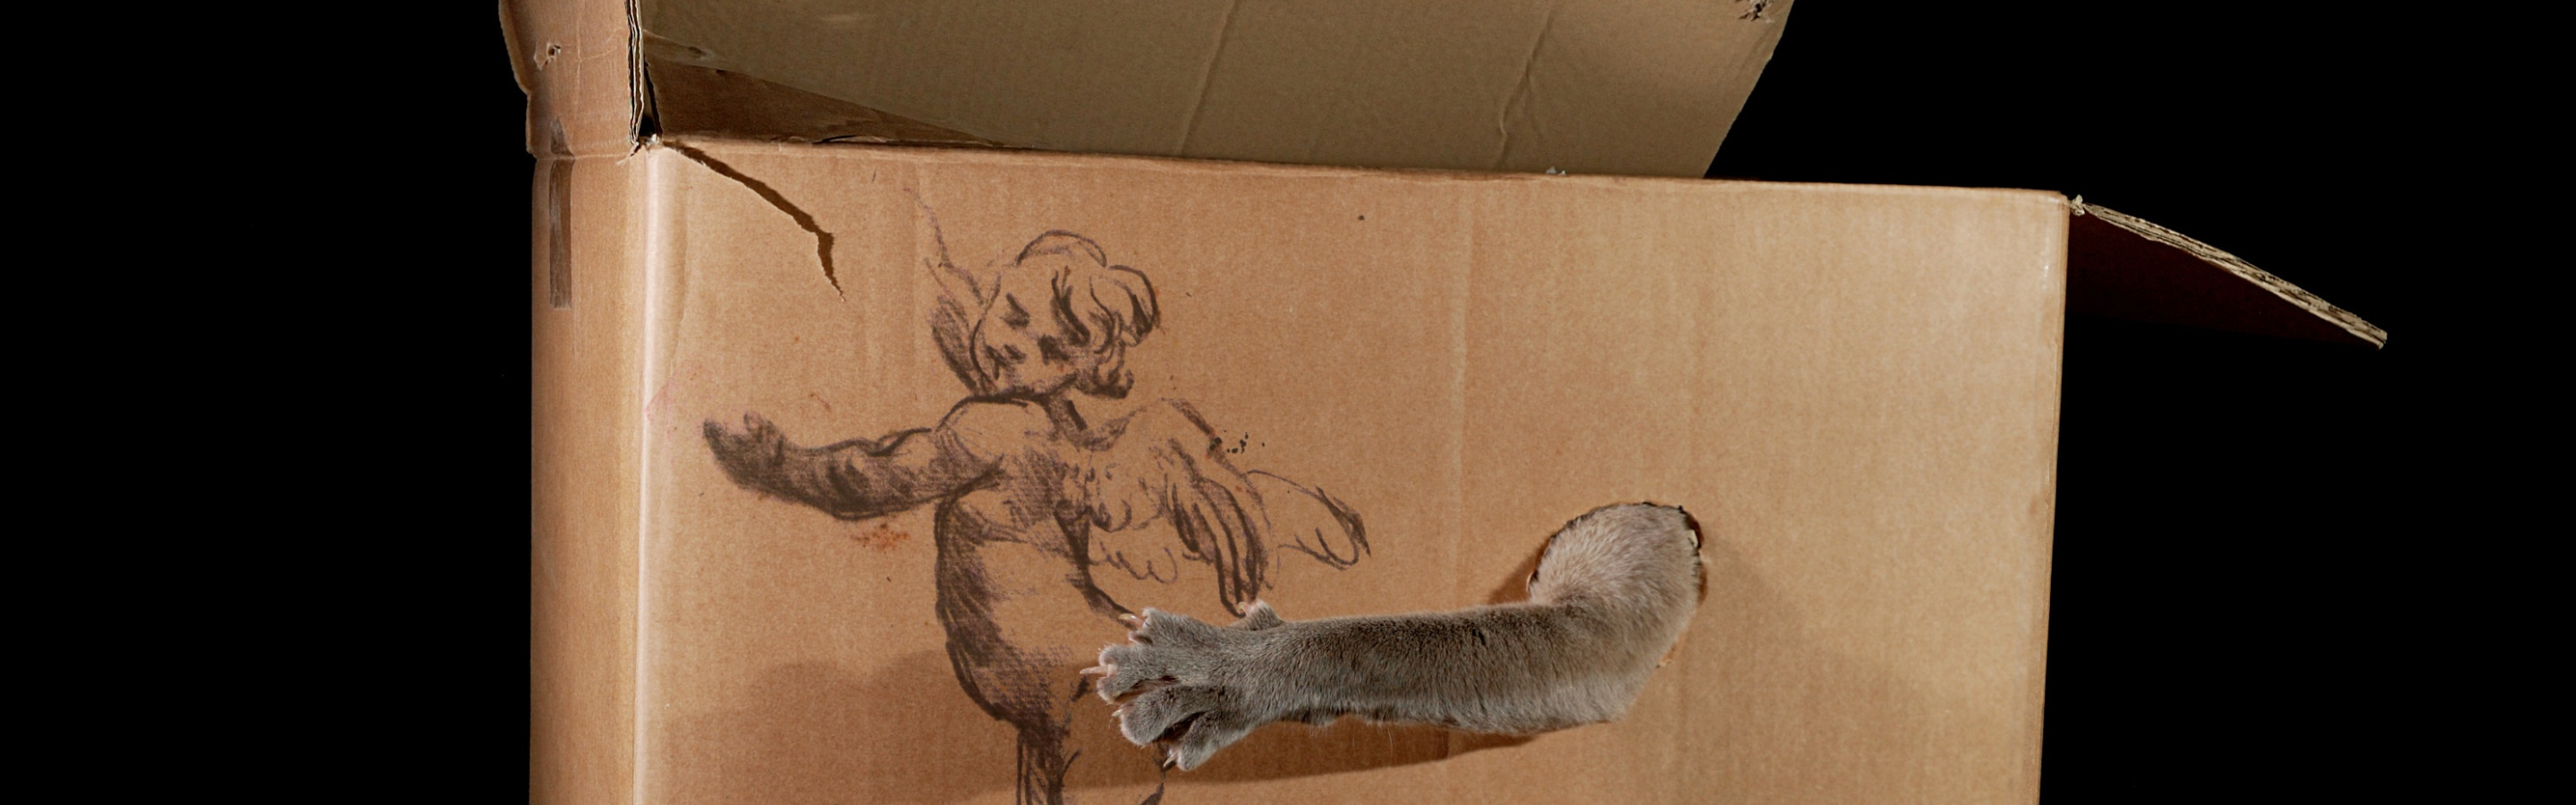 Том игра в коробки. Коробка для кота. Кот в коробке. Коробка для игры кошки. Кот из коробки.